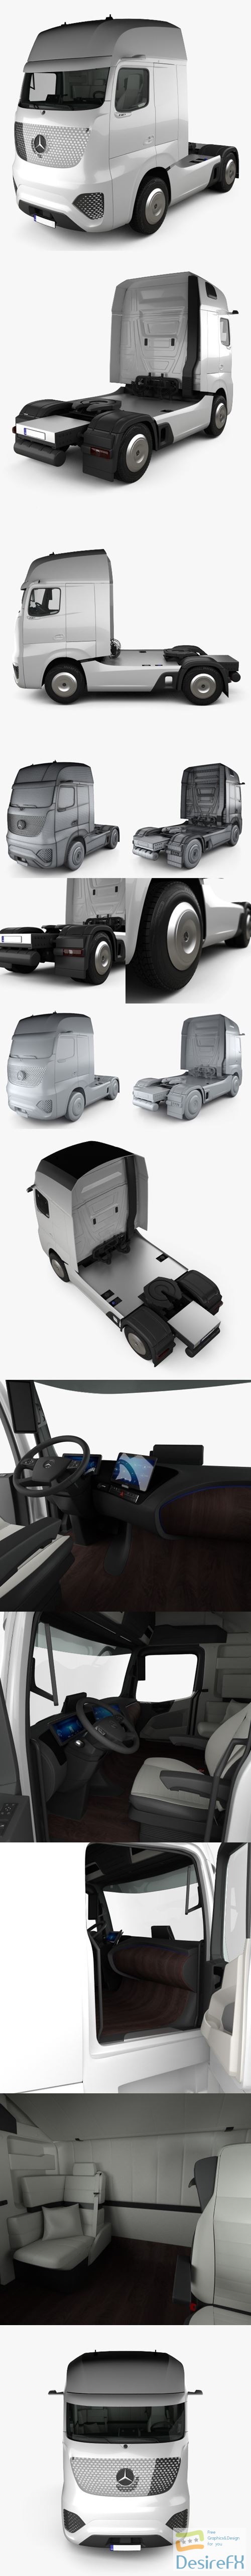 Mercedes-Benz Future Truck with HQ interior 2025 3D Model